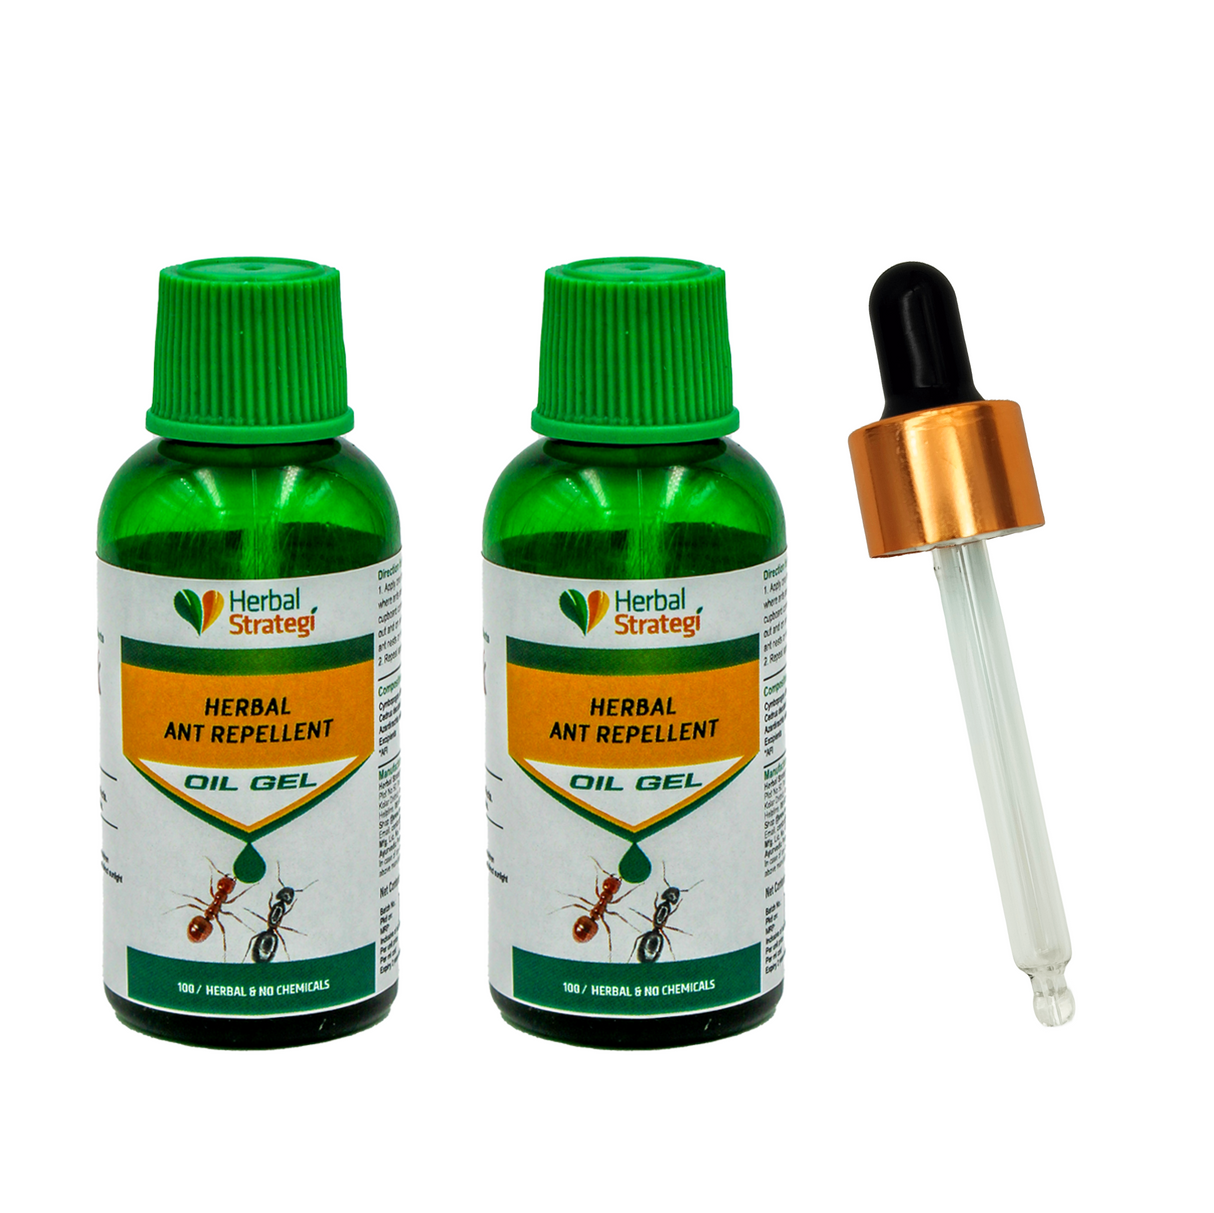 Herbal Ant Repellent OIL GEL Pack of 2 x 25ml